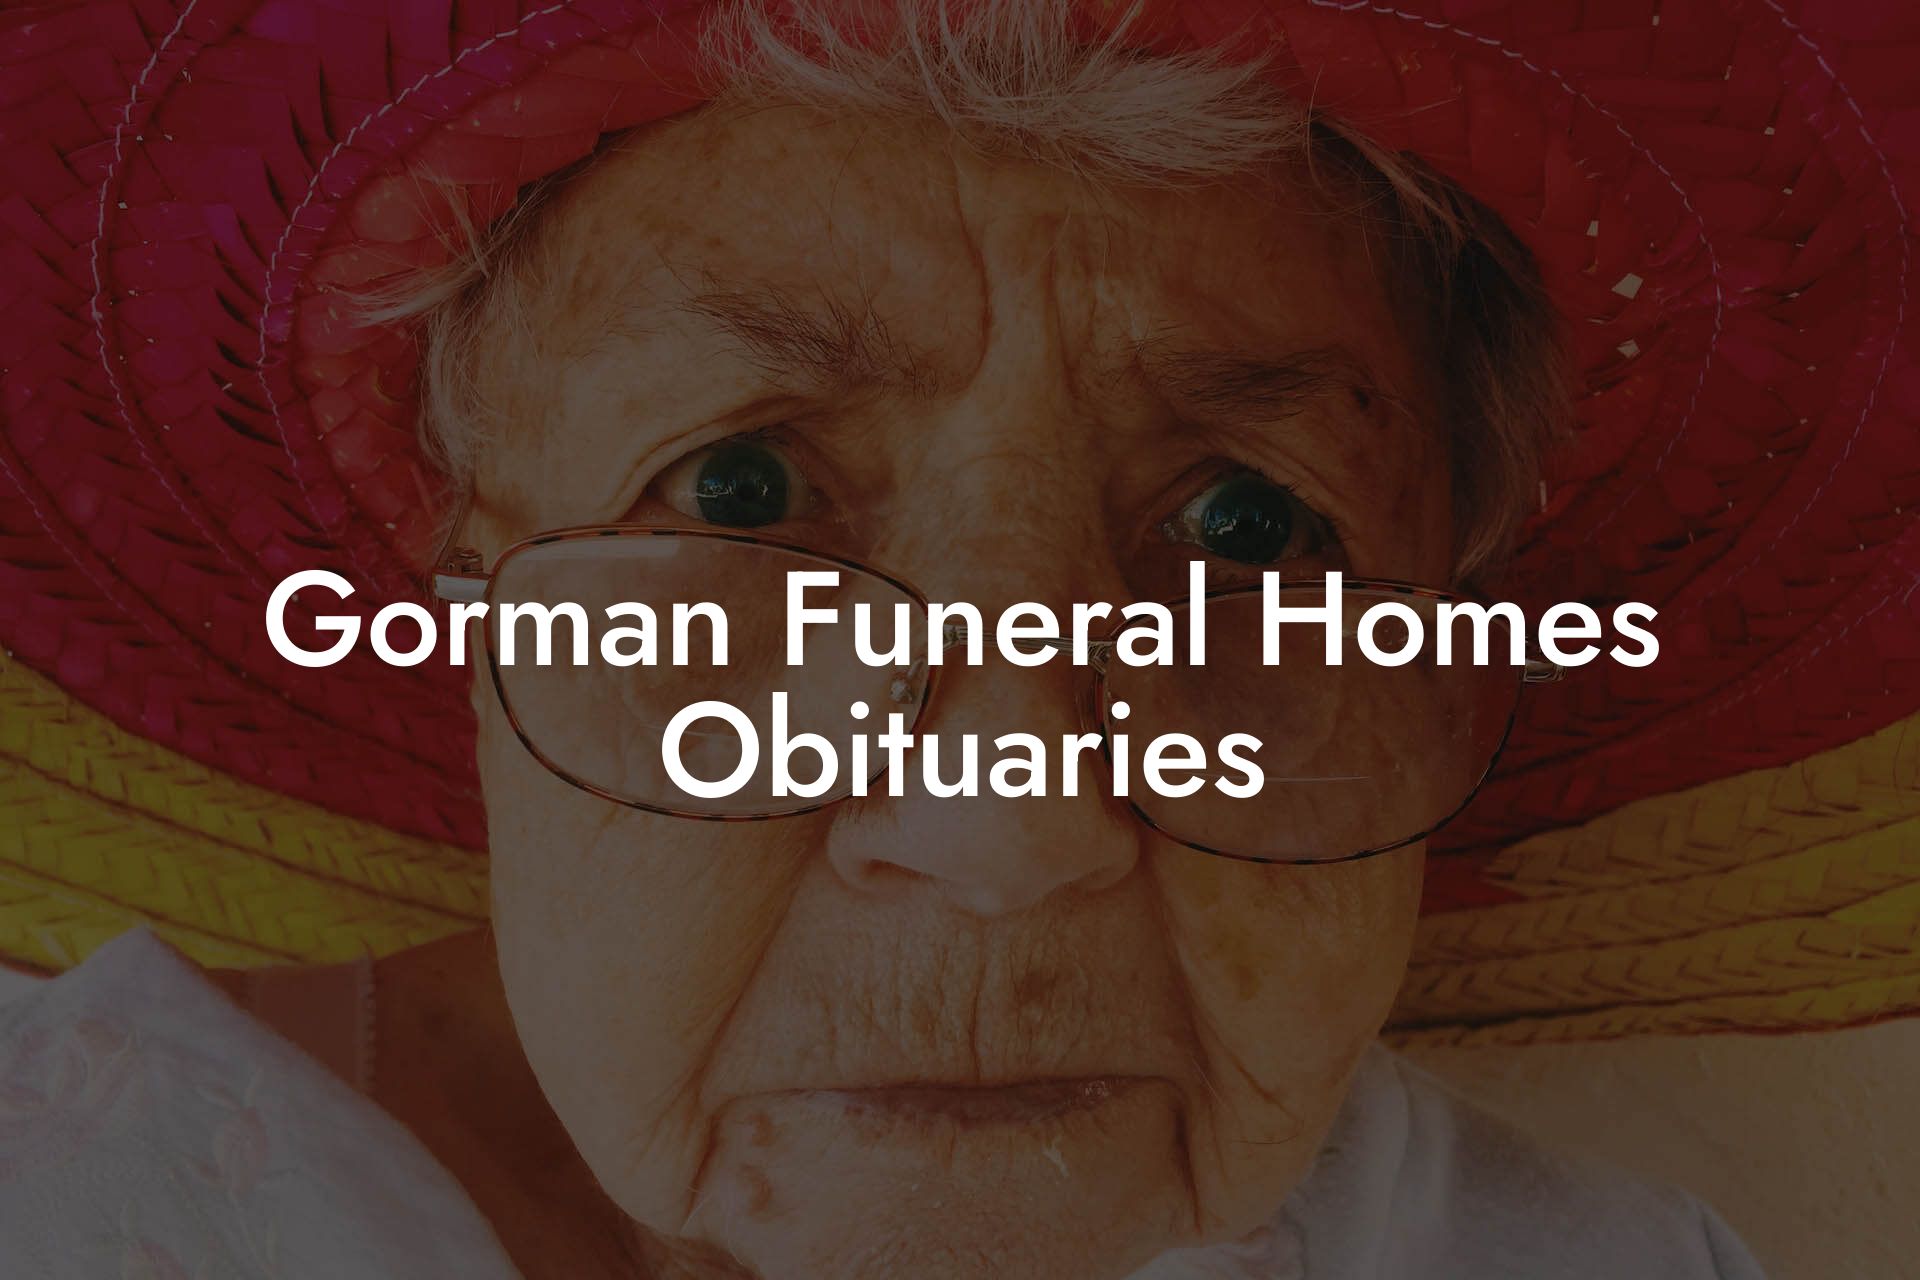 Gorman Funeral Homes Obituaries